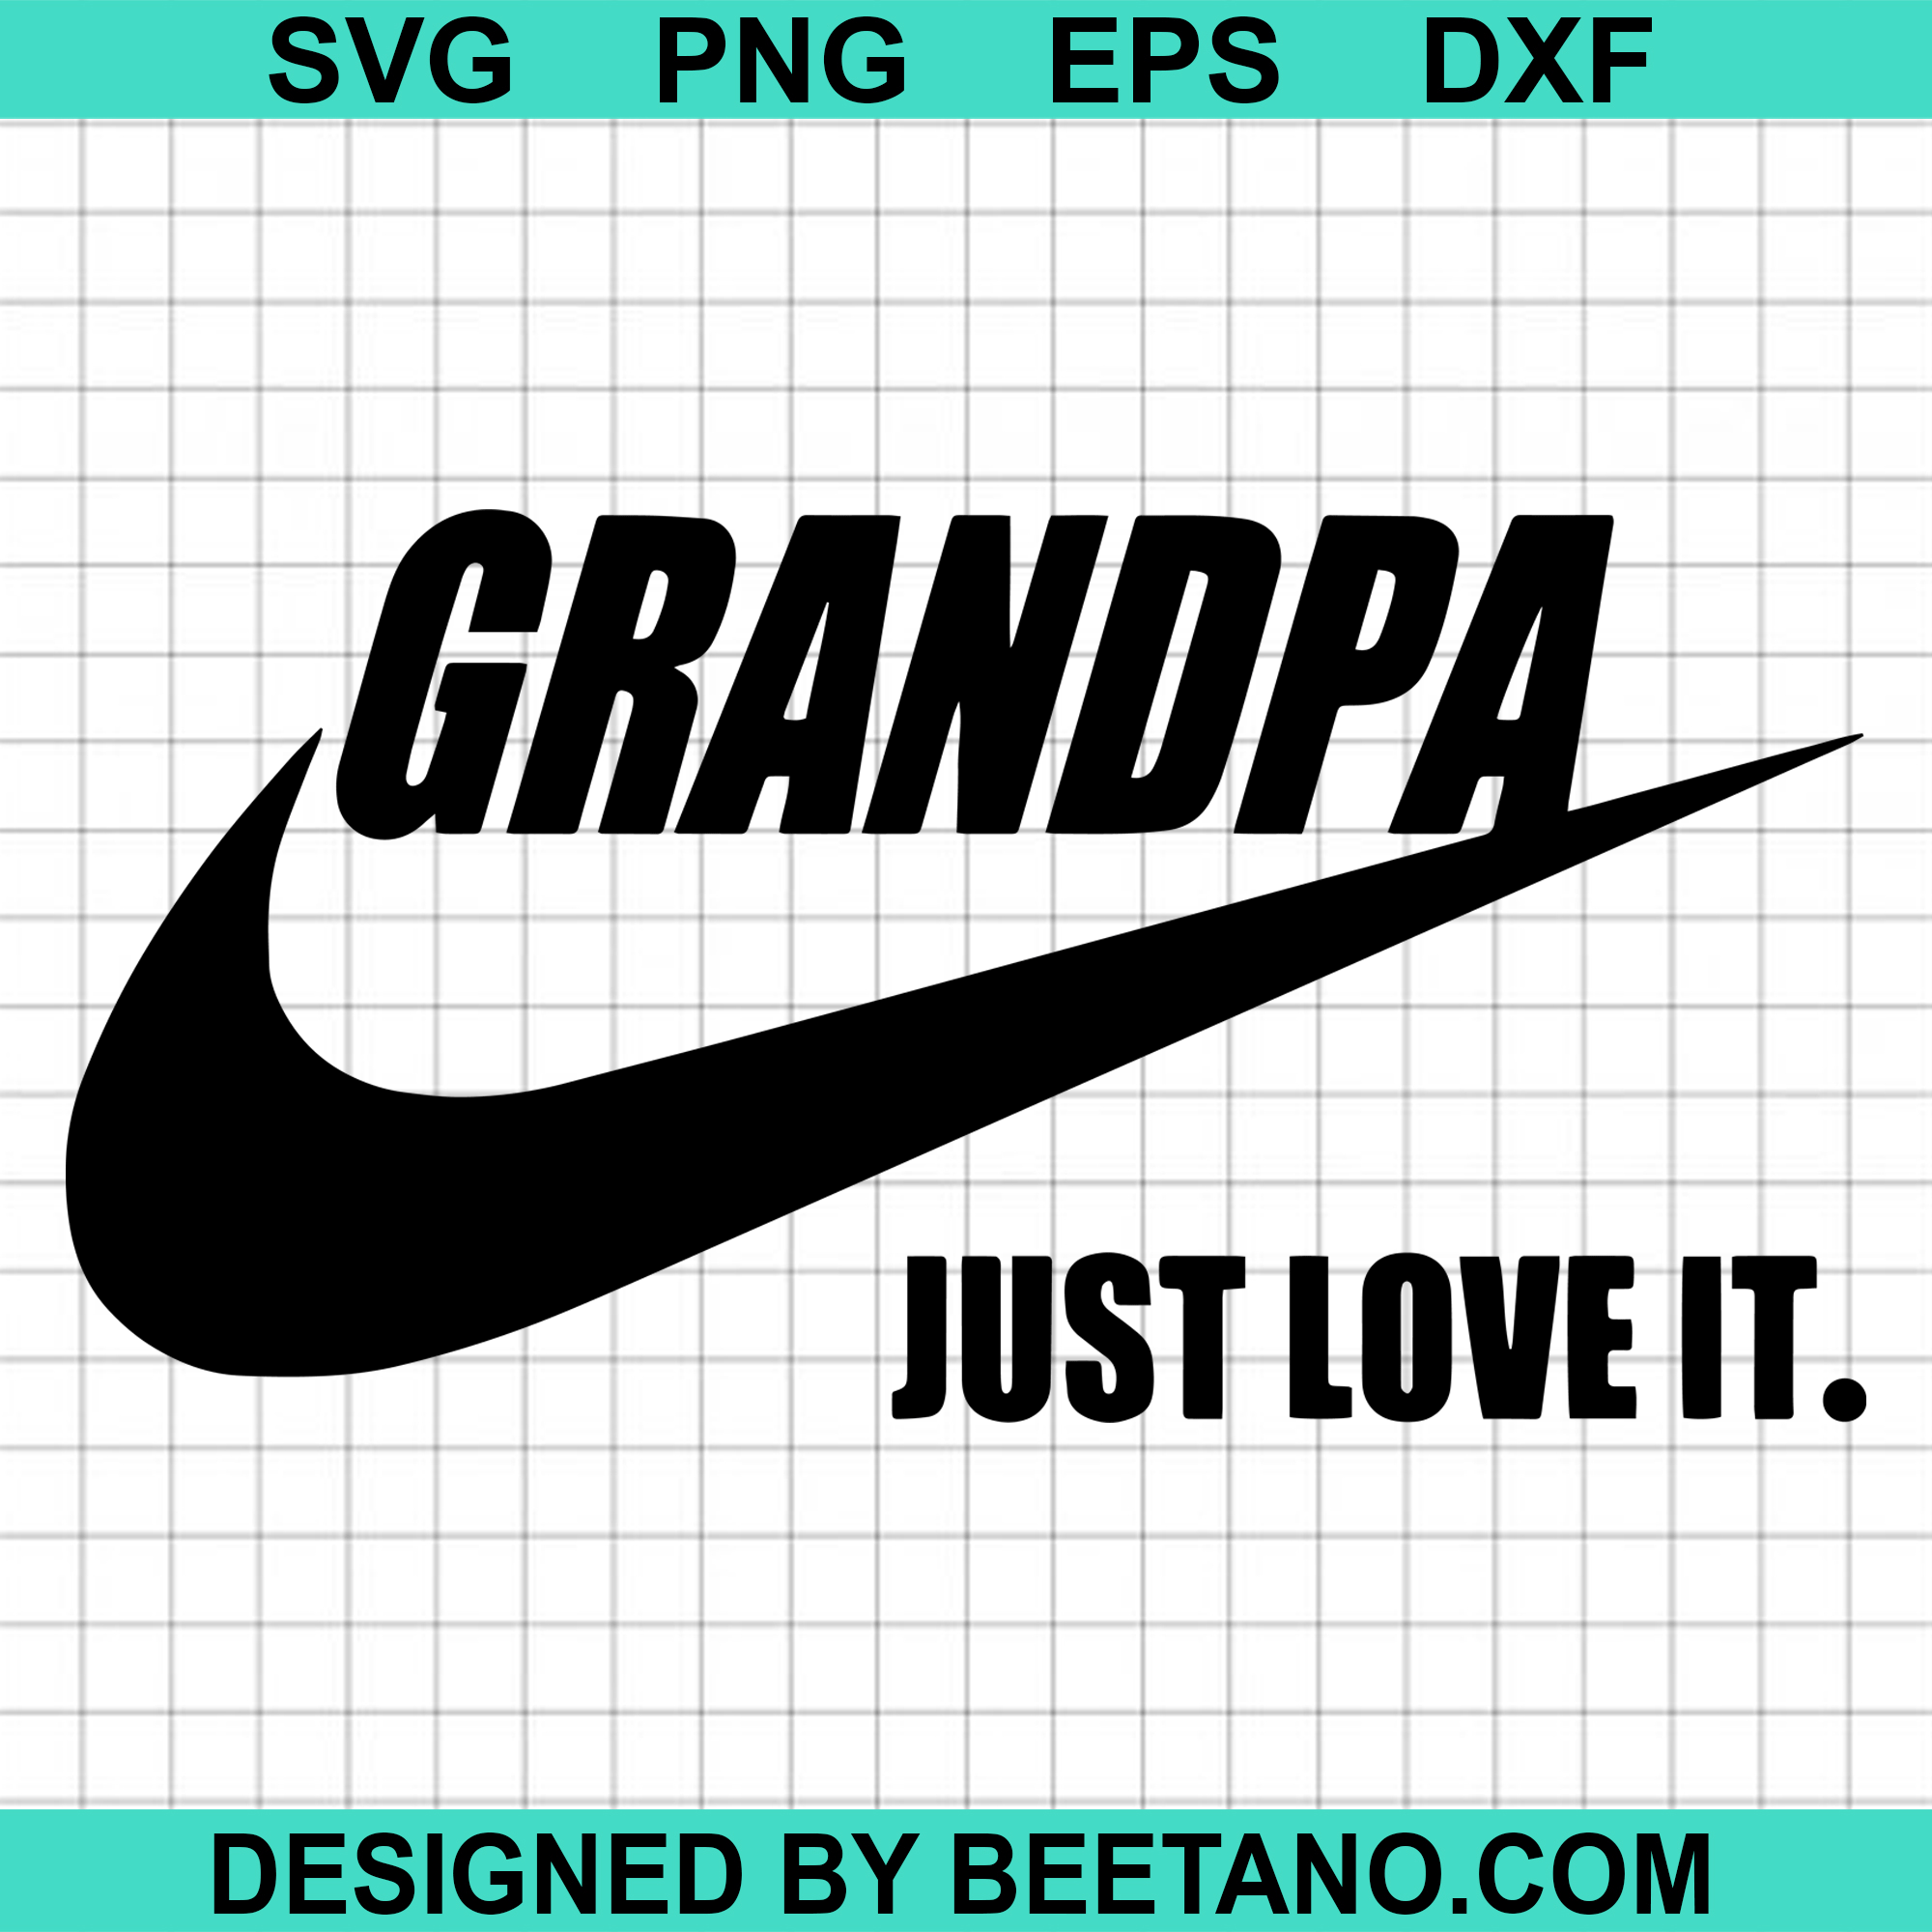 Download Grandpa just love it nike just do it just love it swoosh SVG cut file